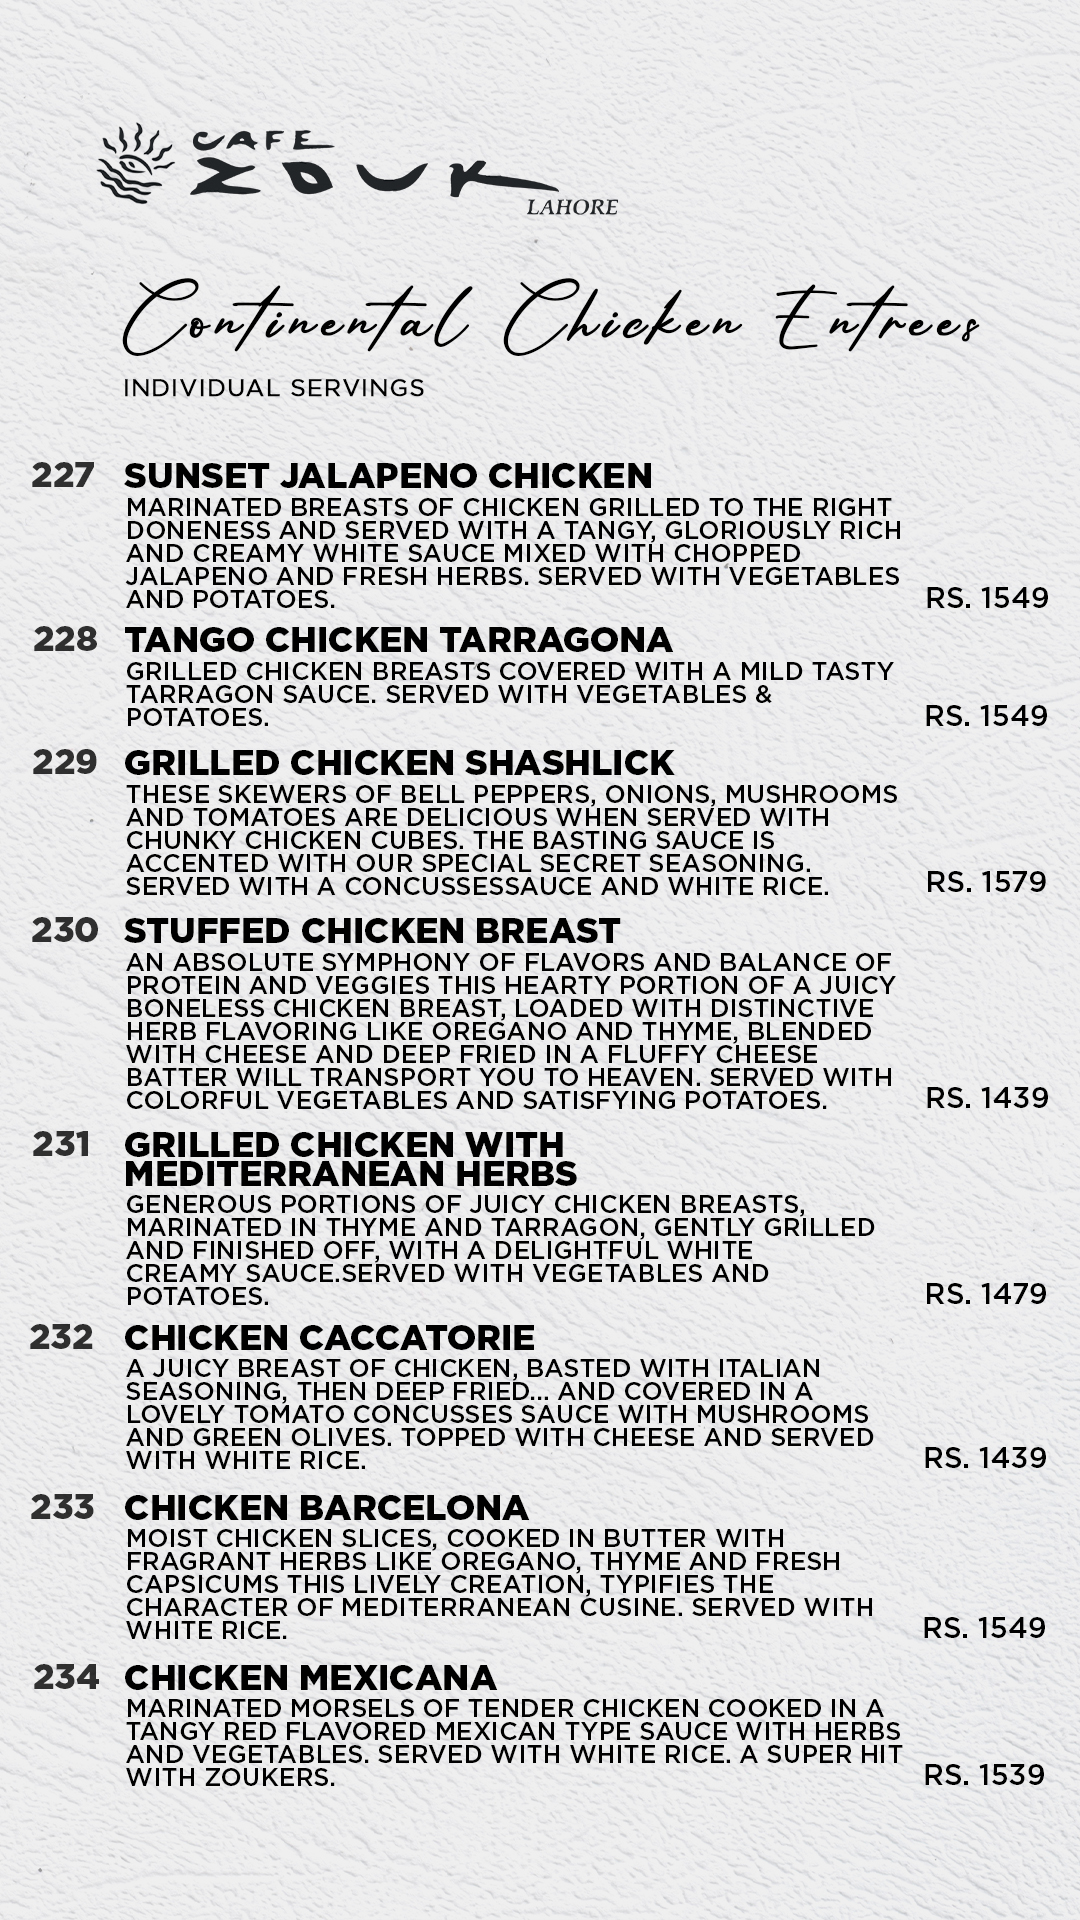 cafe zouk lahore restaurant menu page 28